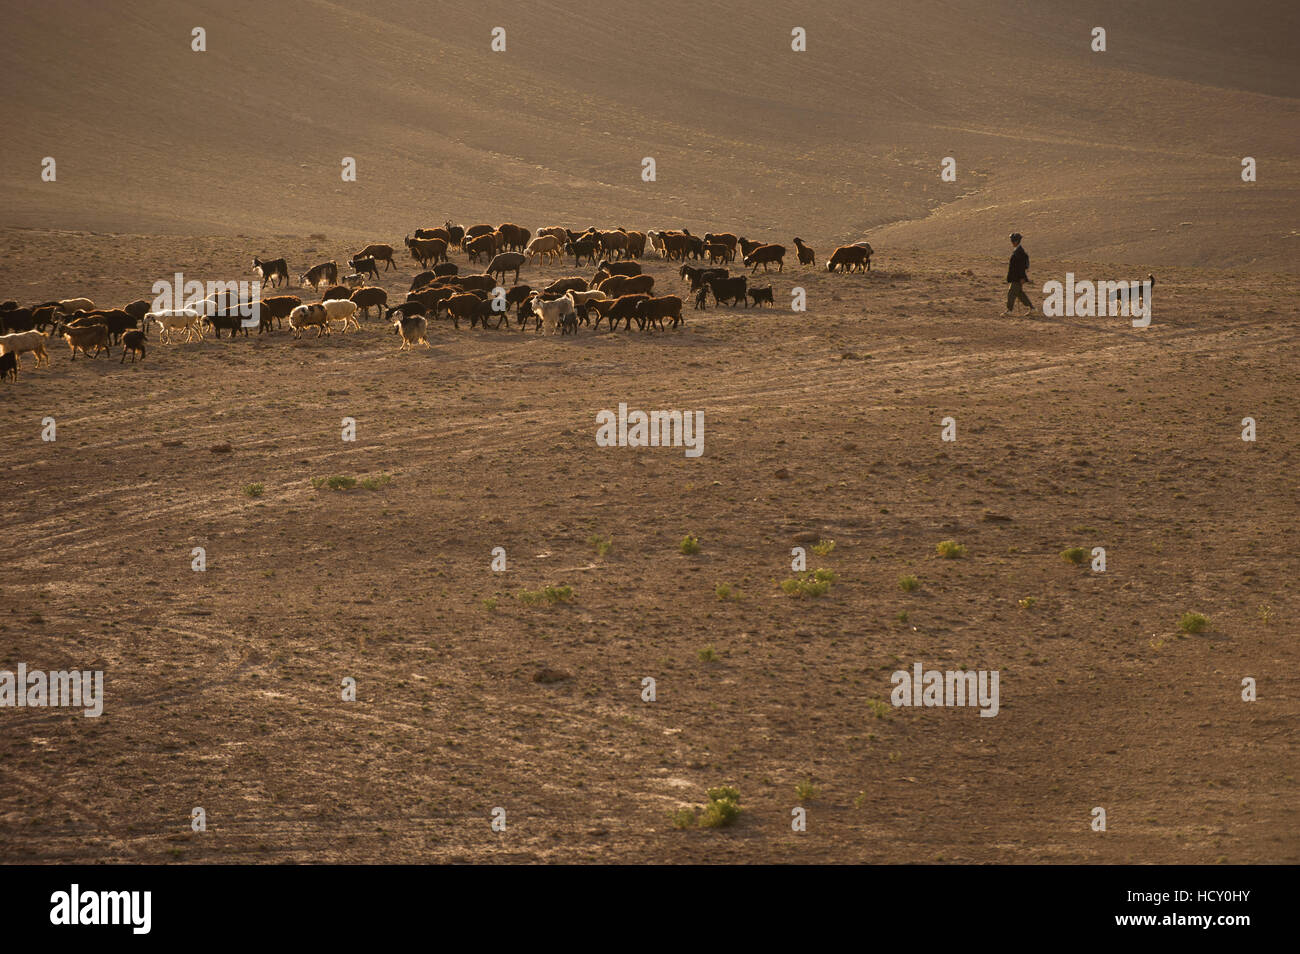 La longue marche dans les collines stériles, de l'Afghanistan, des bergers et leurs troupeaux sont obligés de parcourir de longues distances, l'Afghanistan Banque D'Images